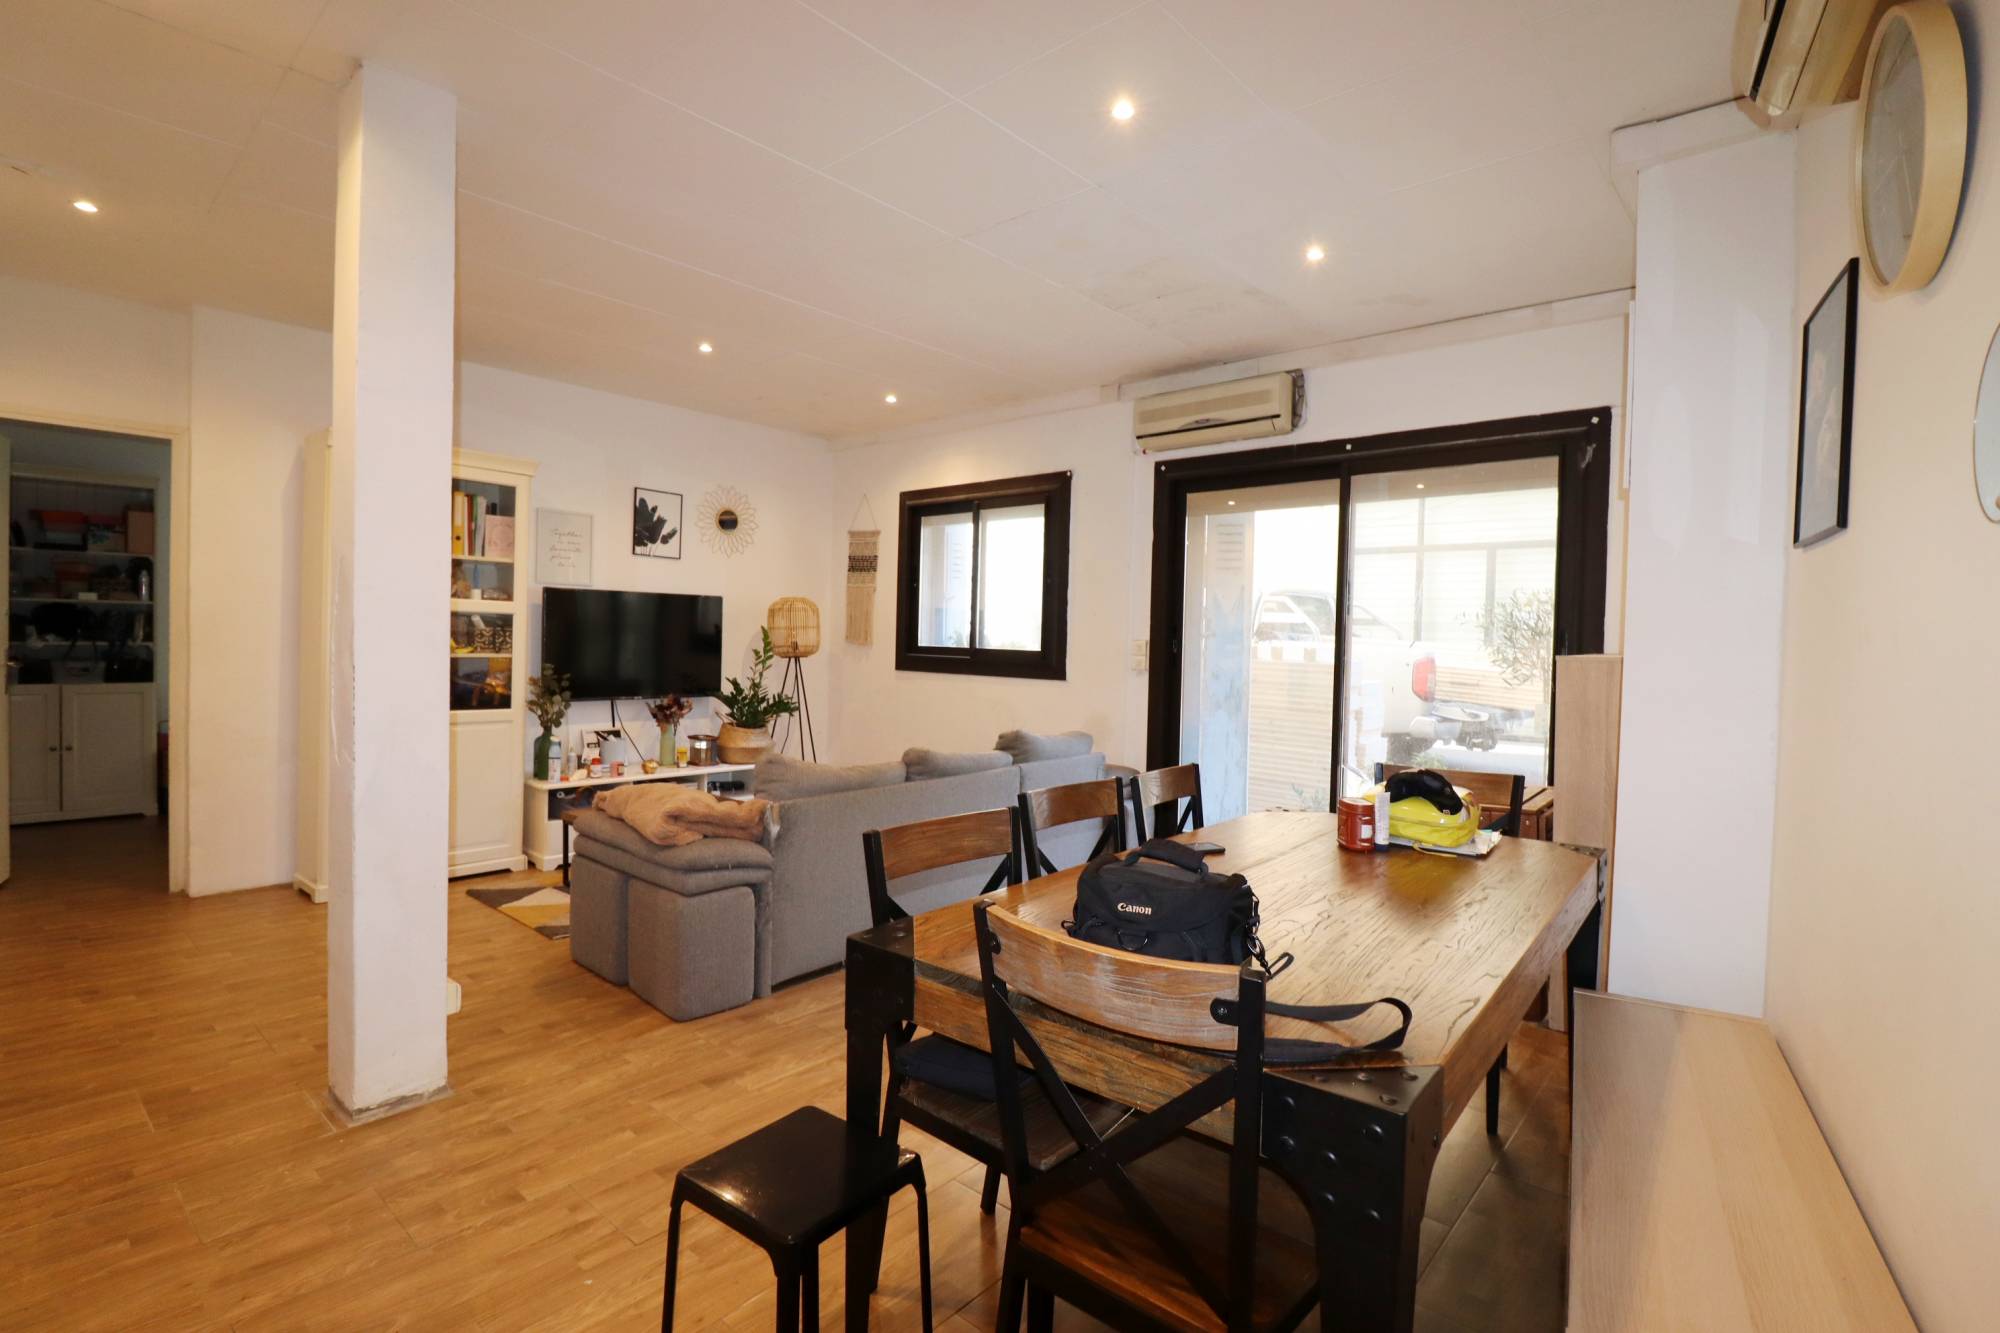 A vendre appartement 2 pièces 55 m² Corderie 13007 Marseille 